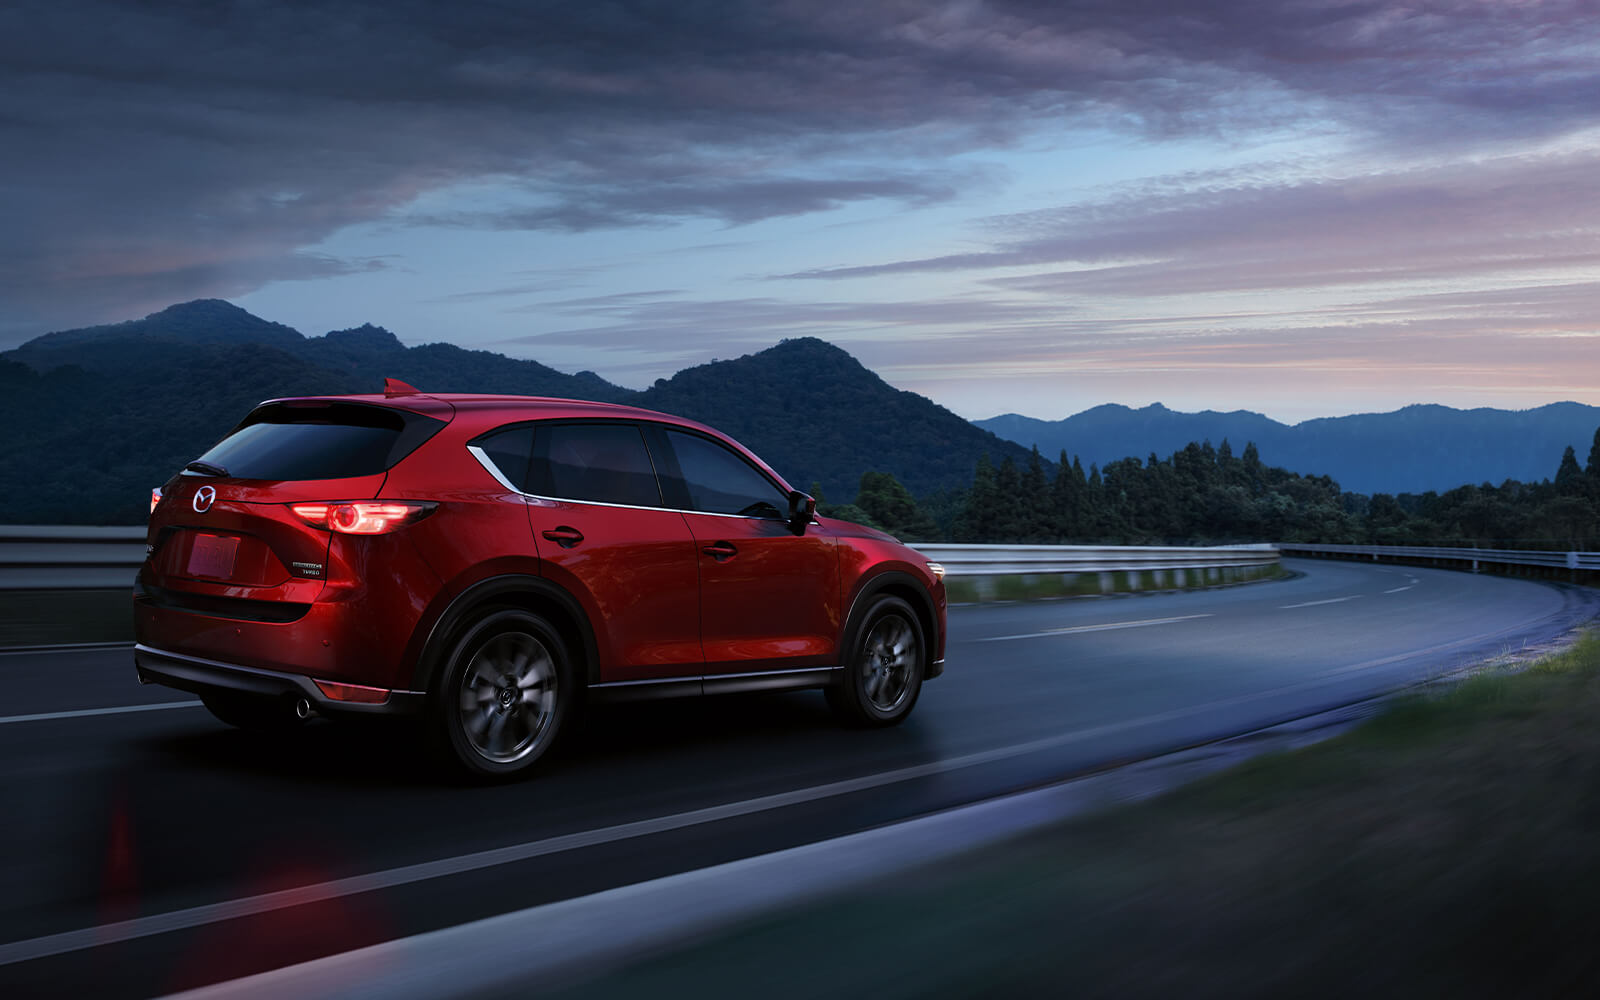 VUS Mazda rouge vibrant avec phares allumés dans une courbe sur une autoroute au crépuscule avec des montagnes sombres au loin. 